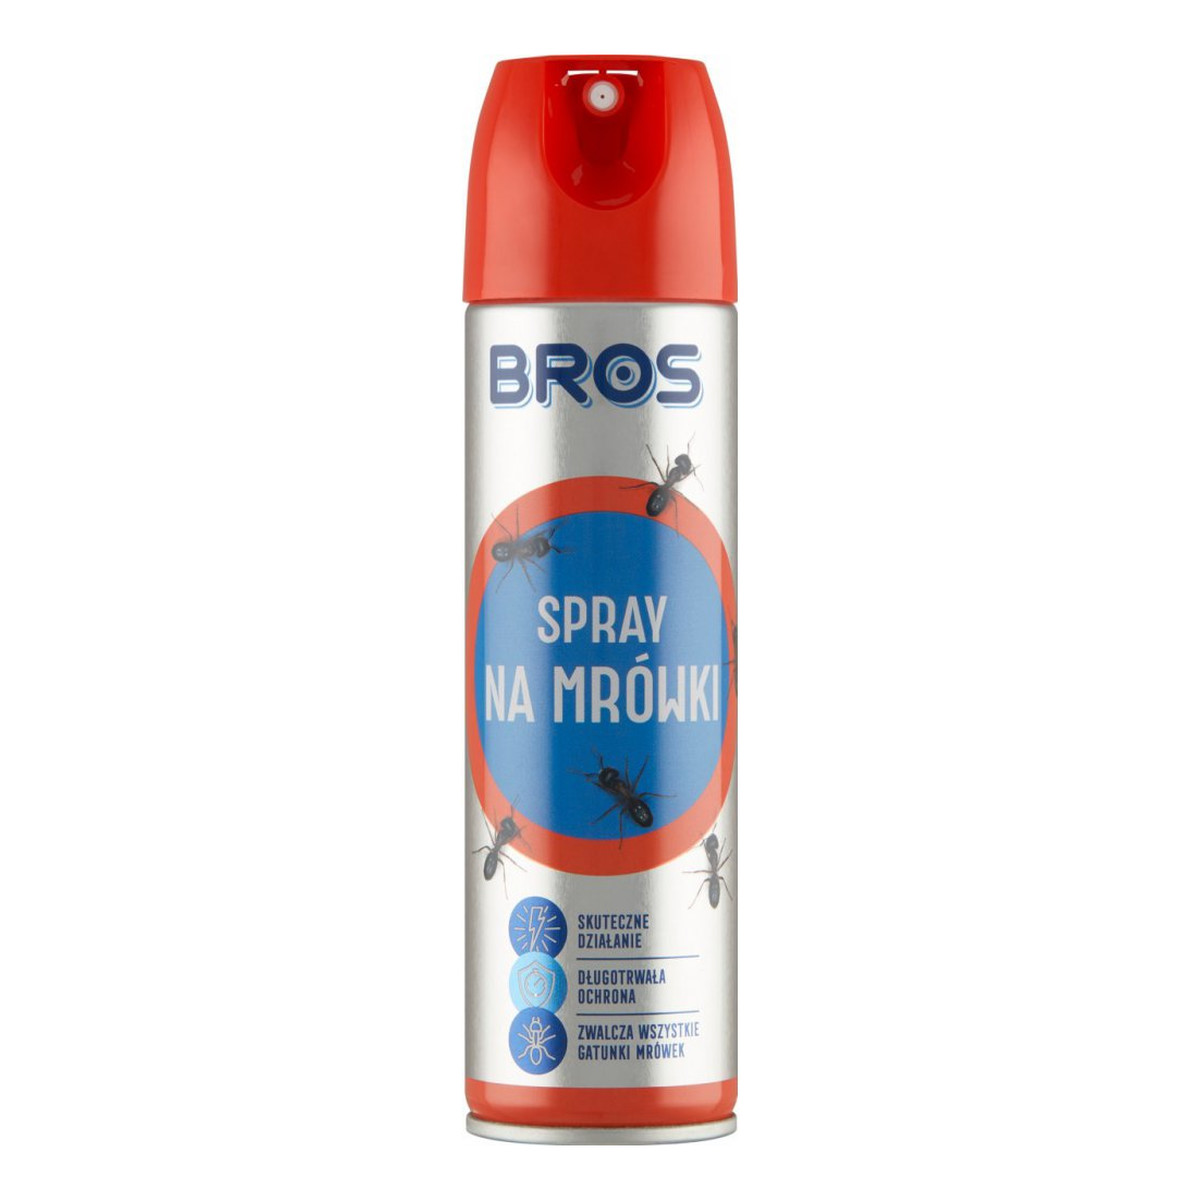 Bros Spray na mrówki 150ml